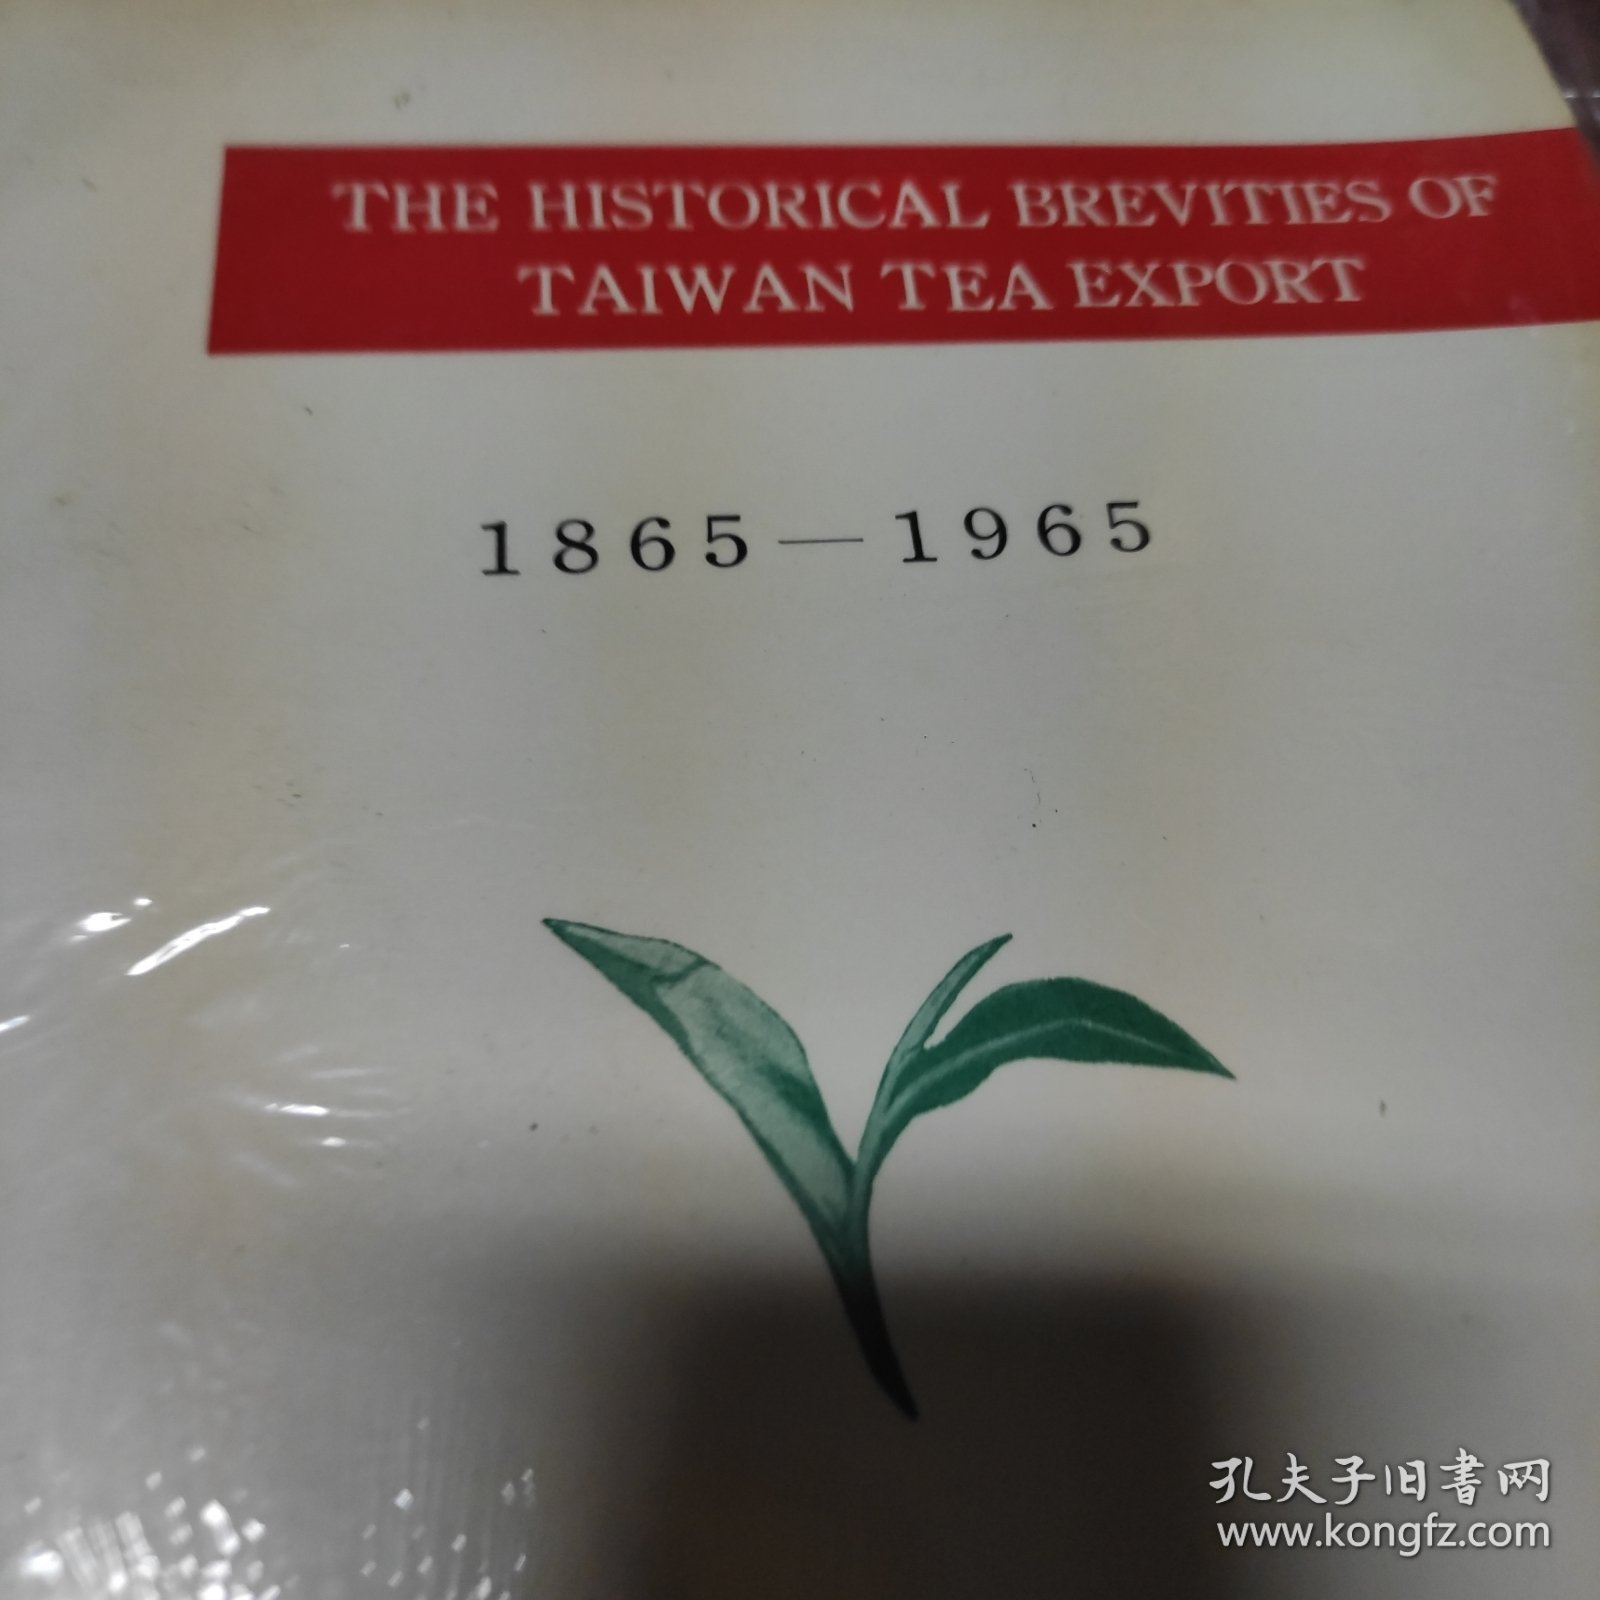 台湾茶输出百年简史